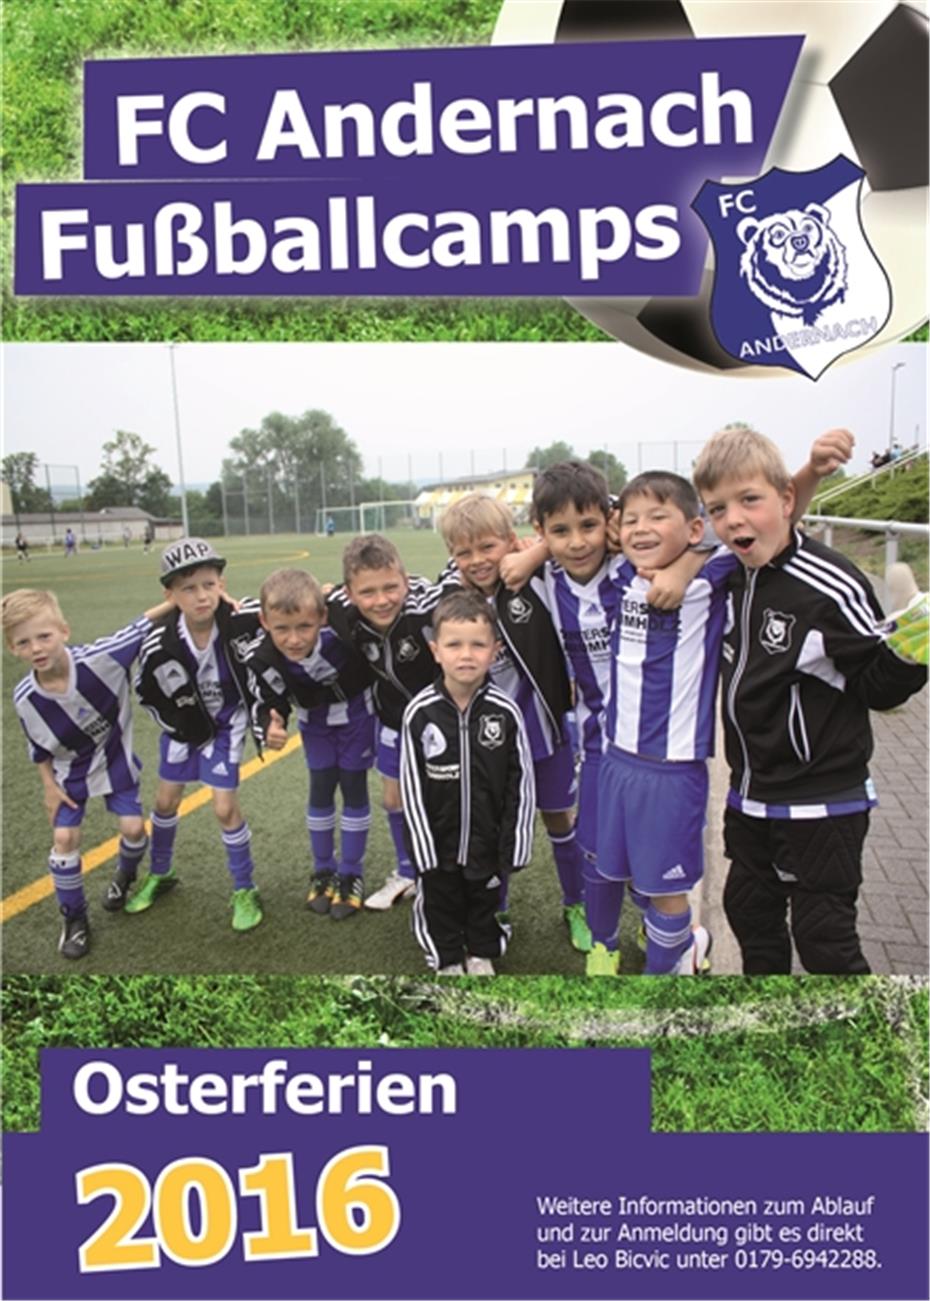 Fußballcamps für Kinder
in den Osterferien